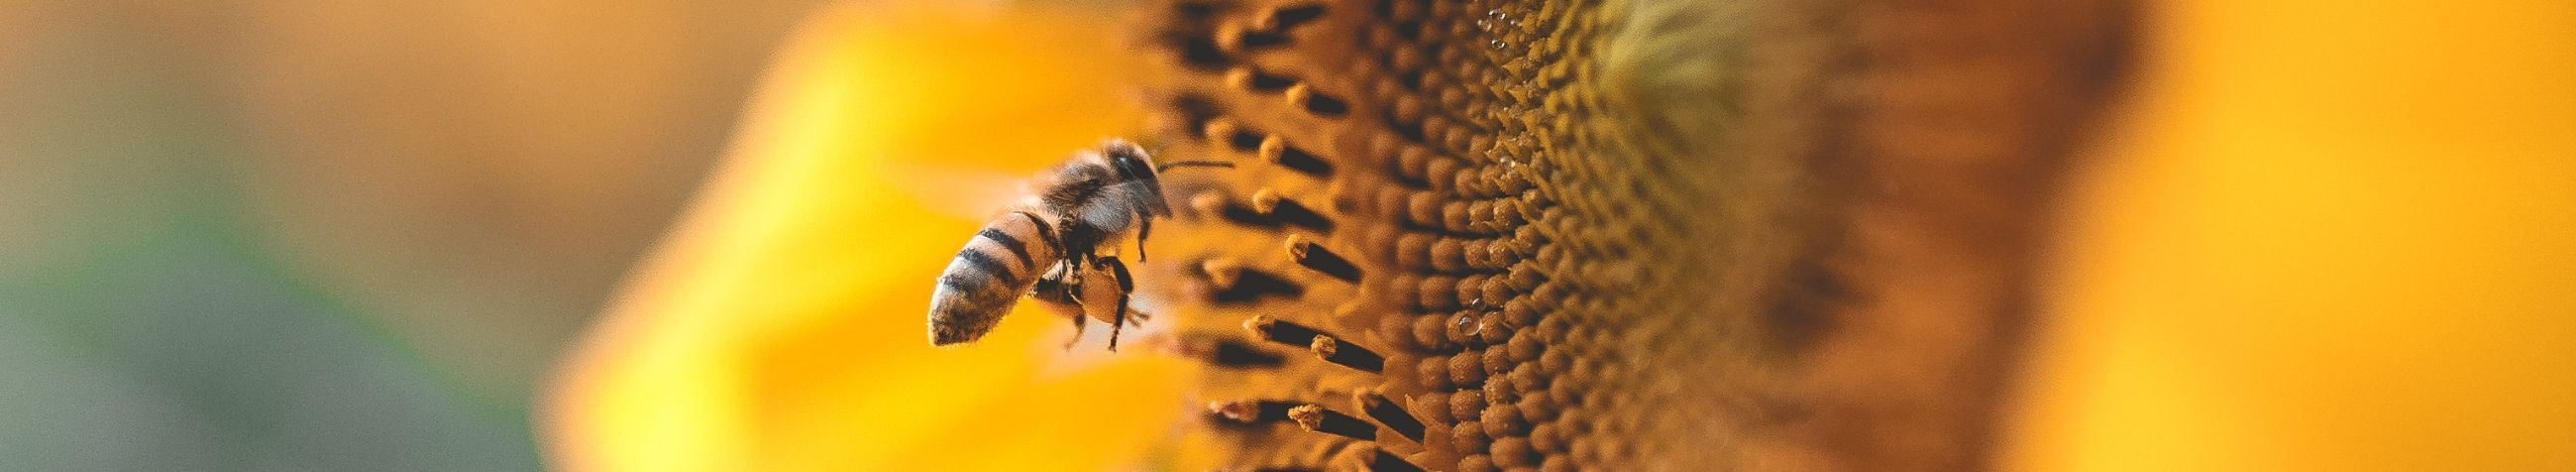 Tegeleme puhta mee tootmise ja müügiga, pakkudes kvaliteetseid mesindussaadusi oma veebipoes, nii suures kui ka väikeses koguses.